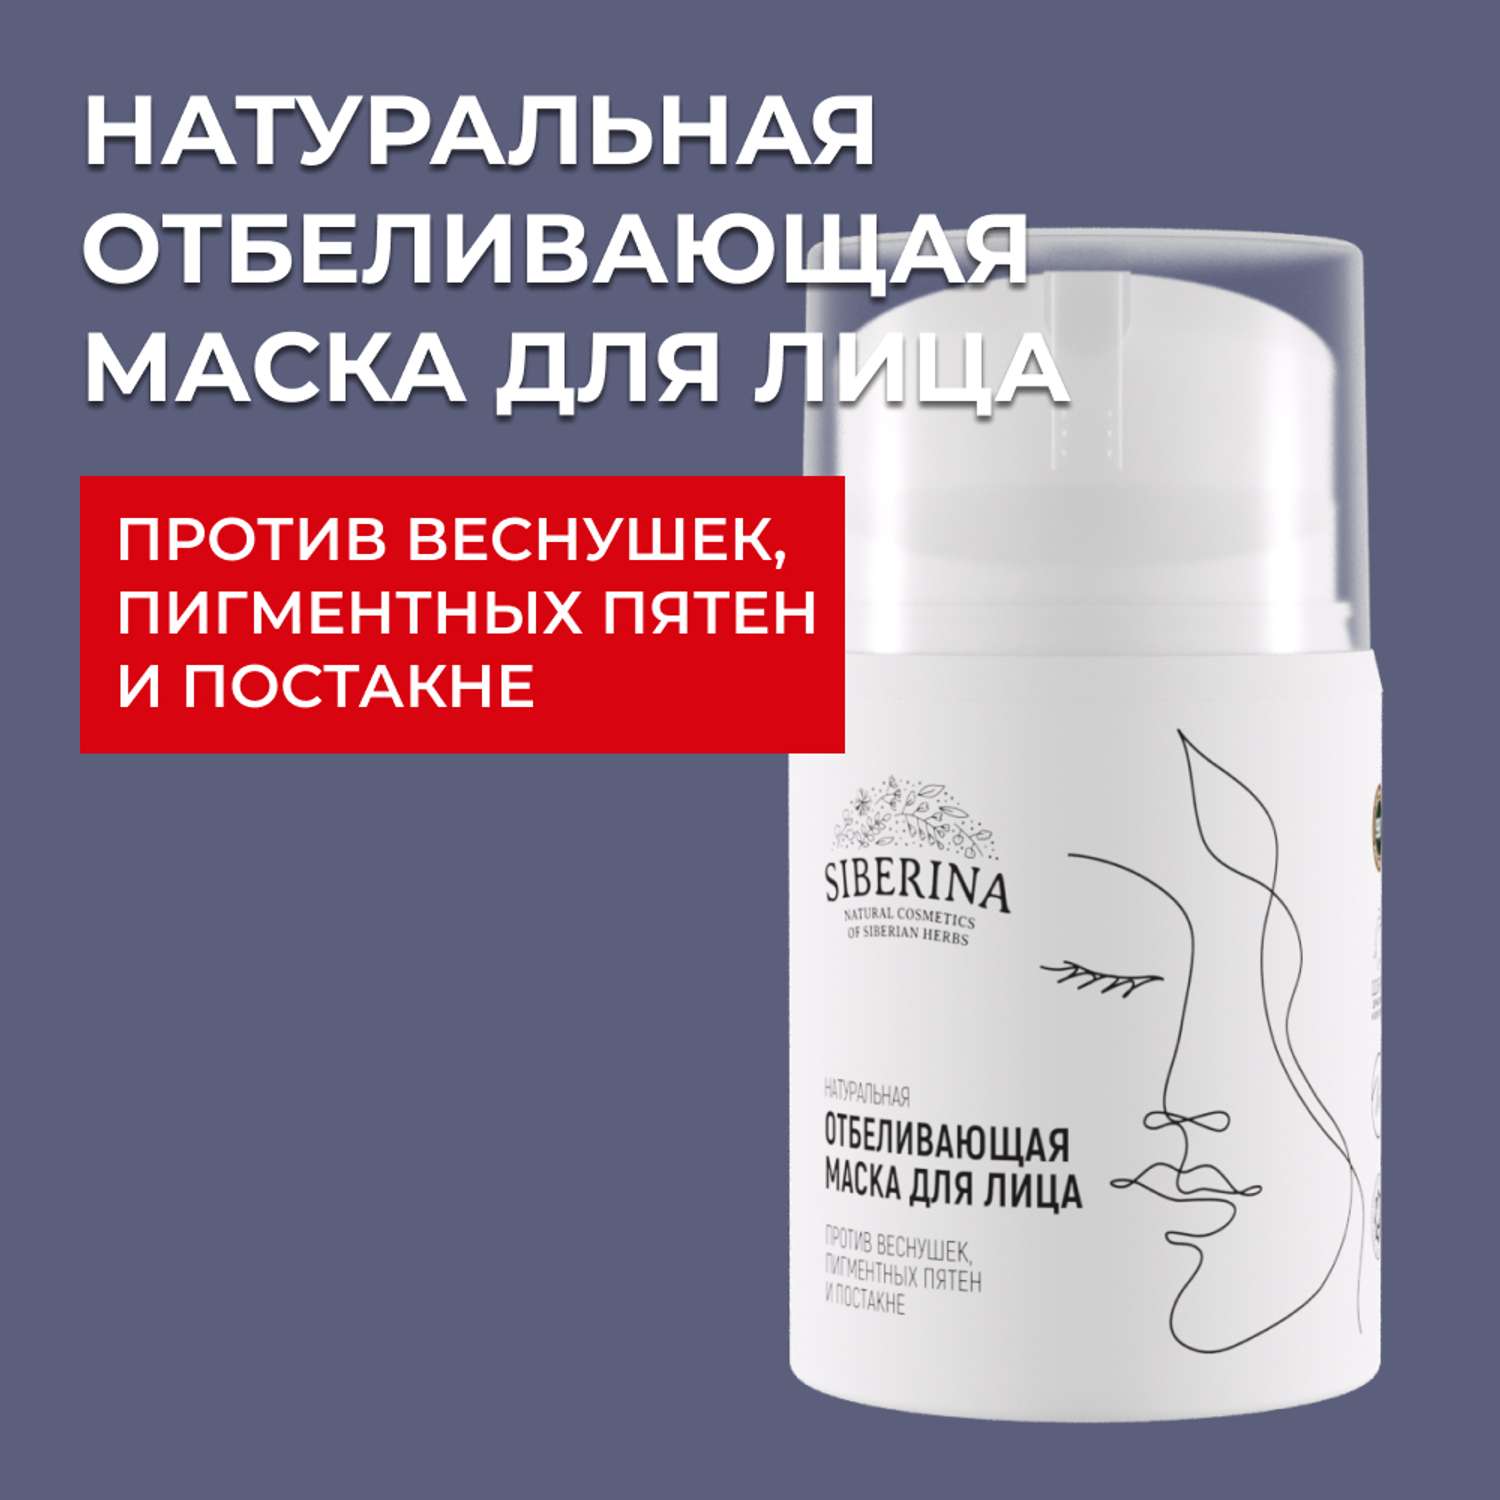 Маска для лица Siberina натуральная отбеливающая против веснушек и постакне 50 мл - фото 1